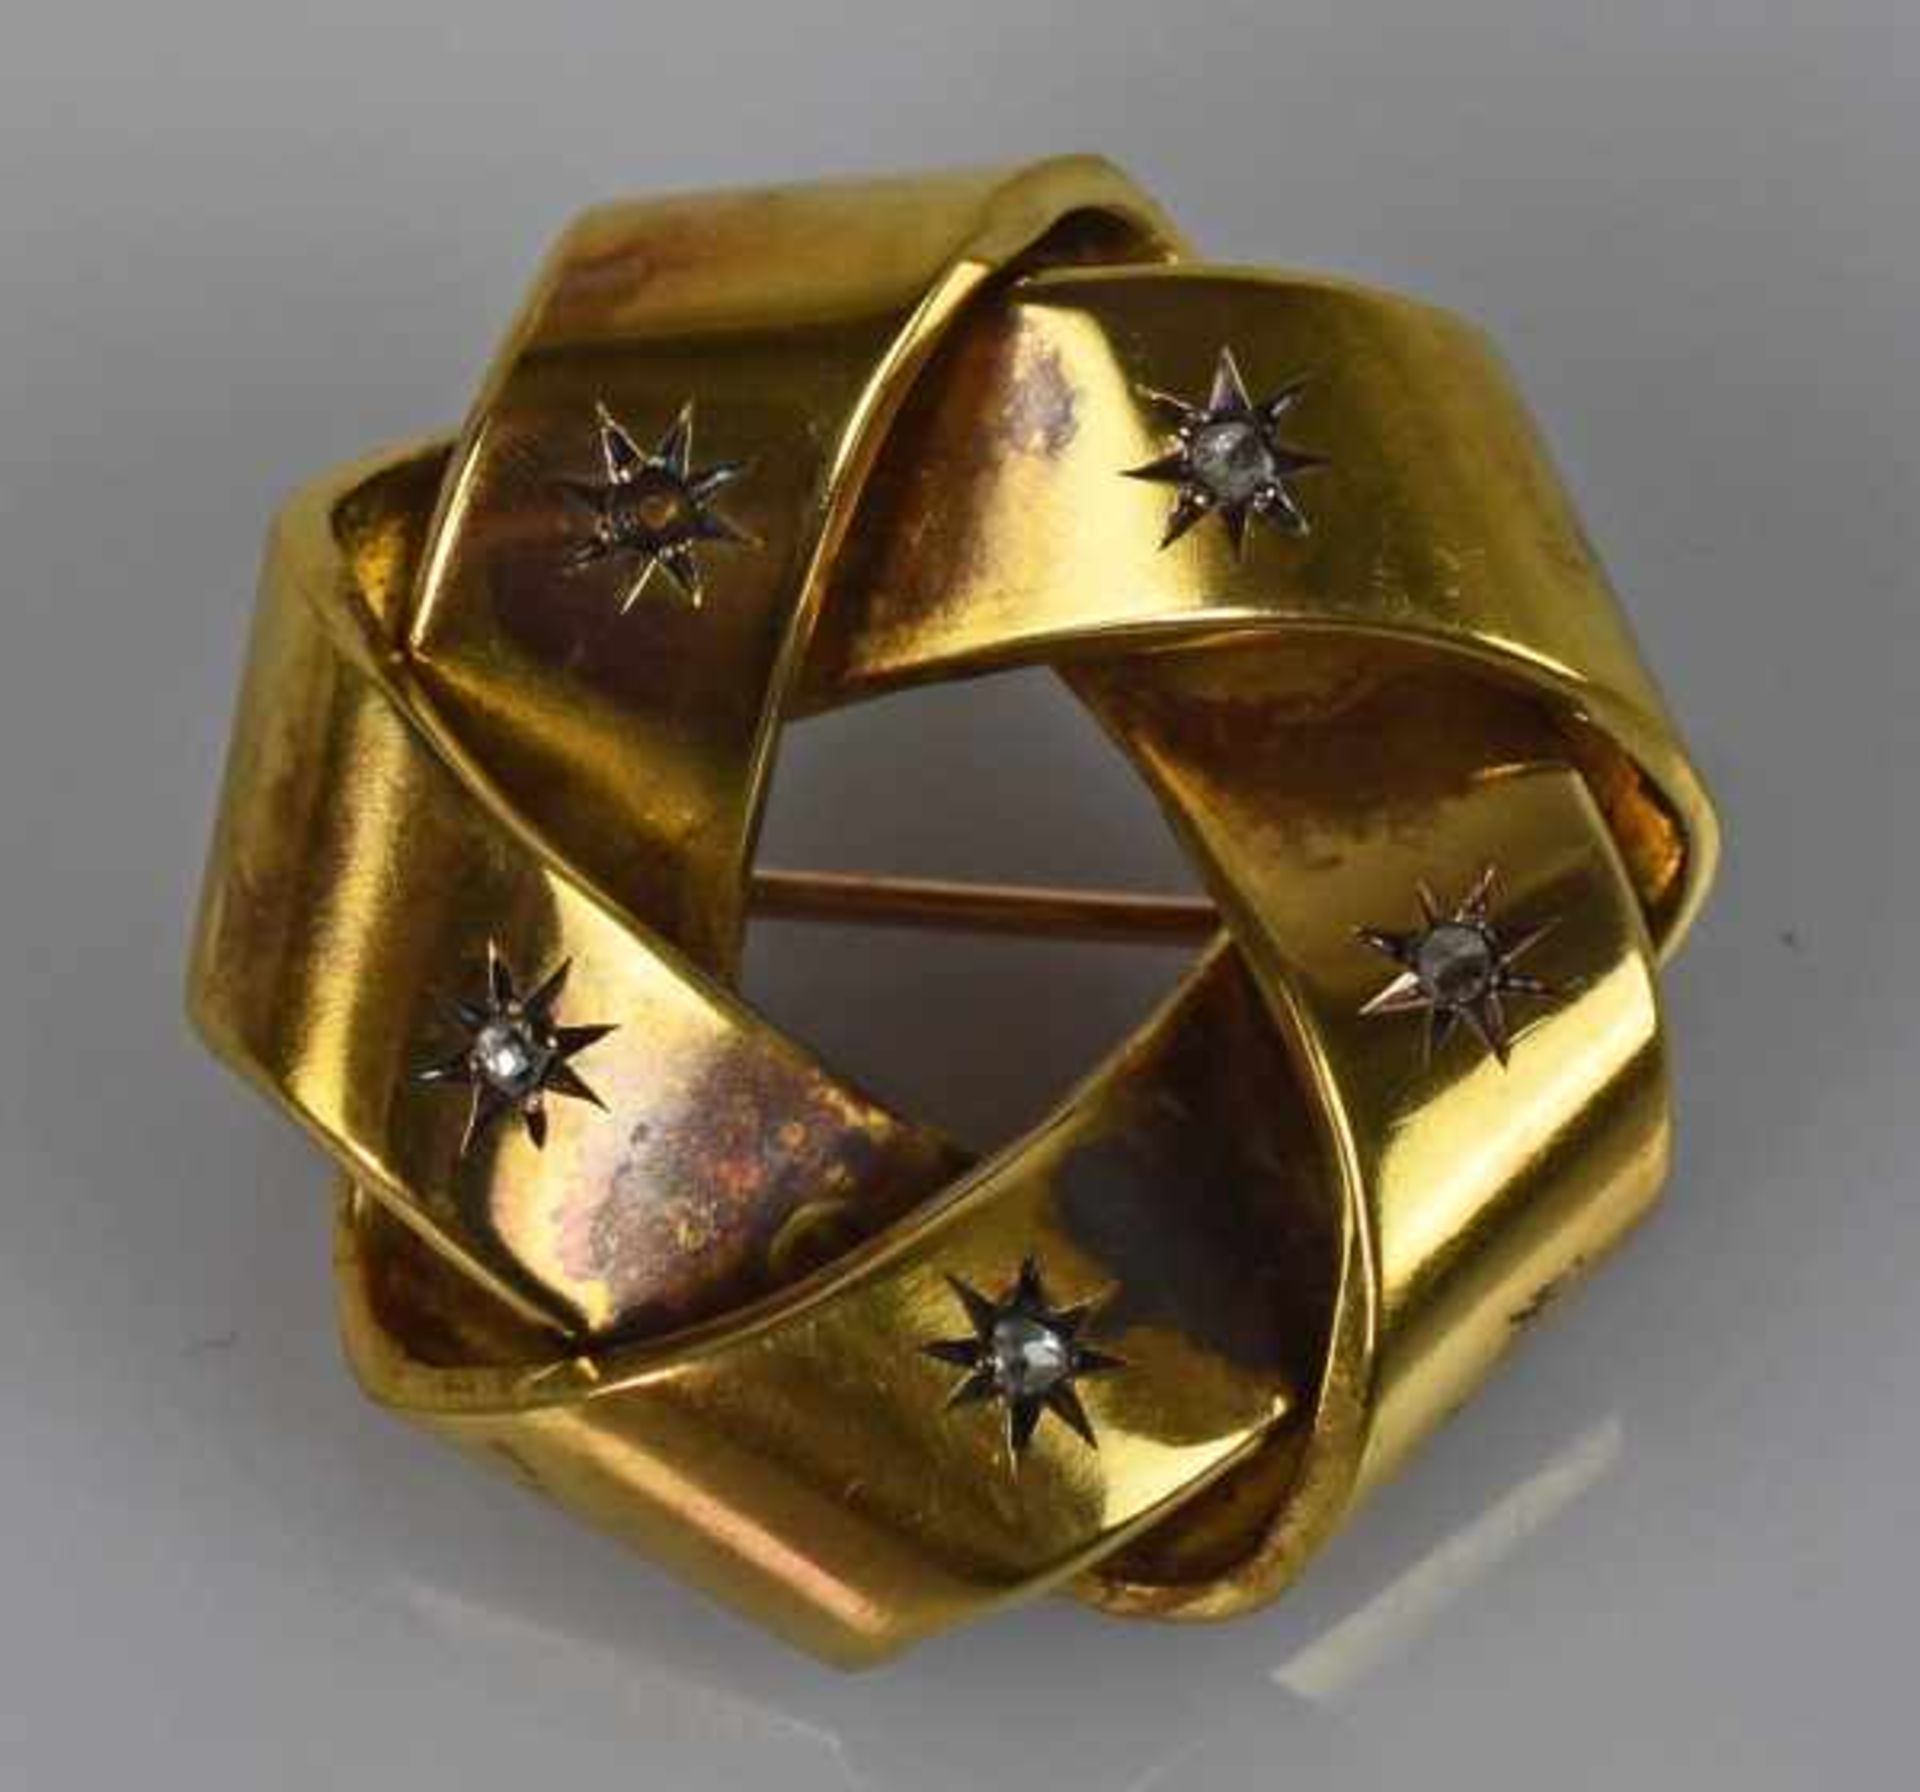 BROSCHE rund geflochtenes, breites Band besetzt mit 5 kleinen Diamanten in sternförmiger Fassung,